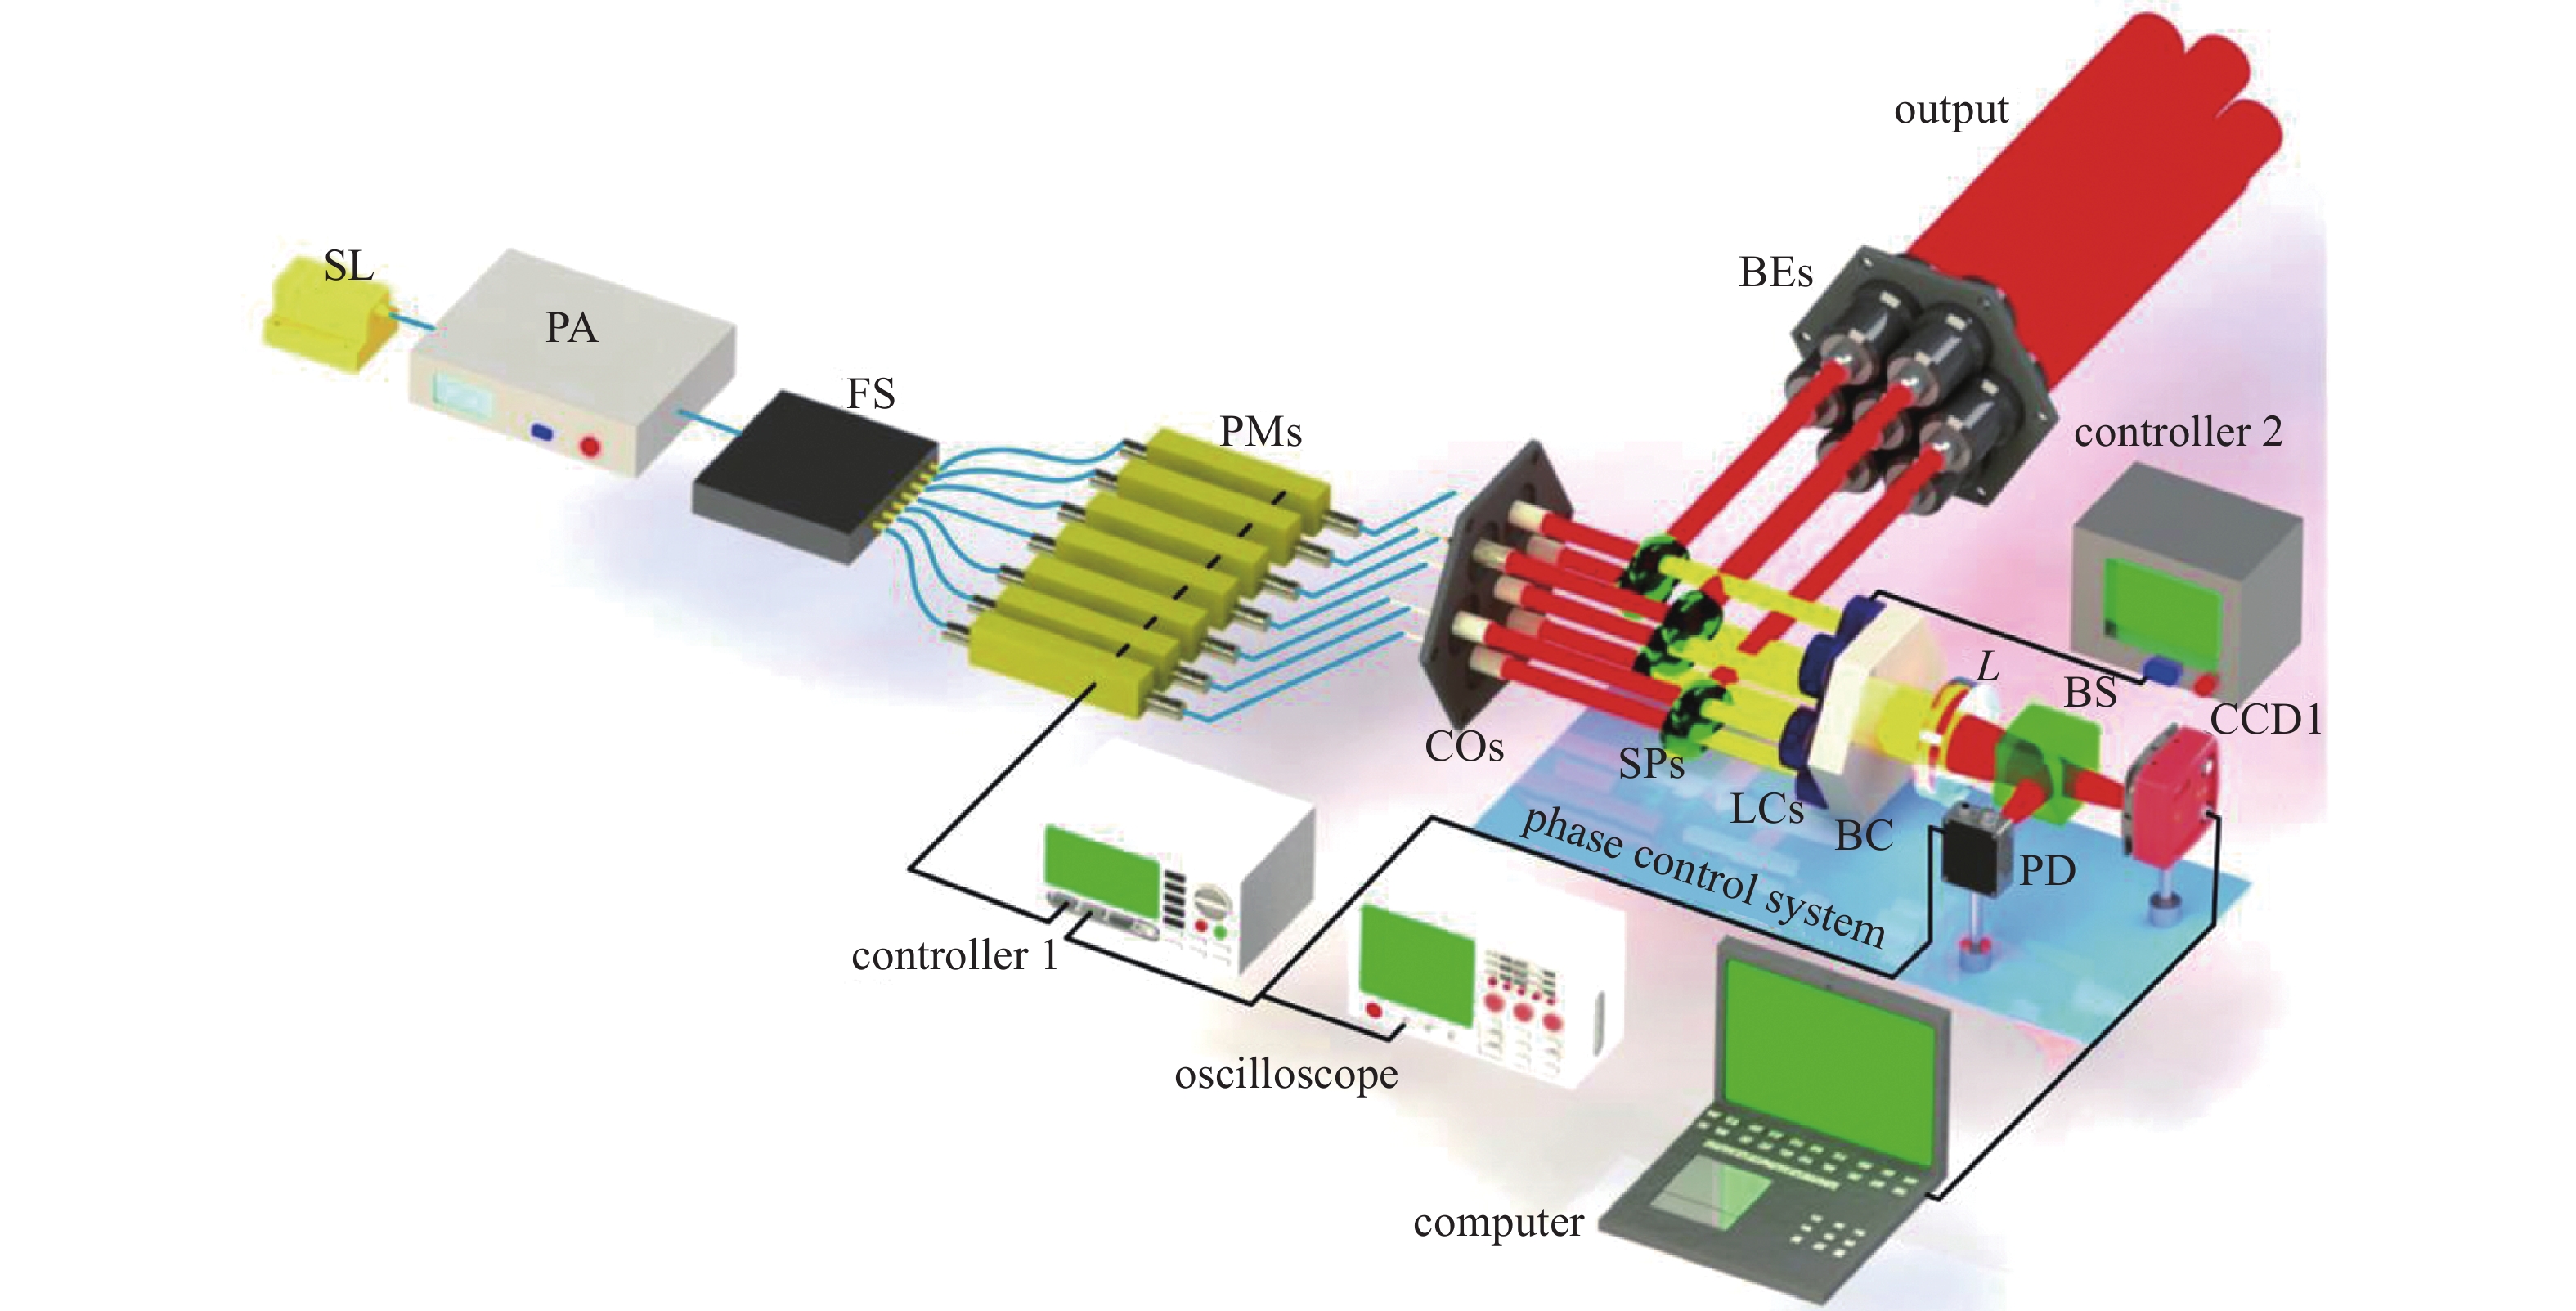 Experimental setup of coherent fiber laser array based on internal phase control[52]